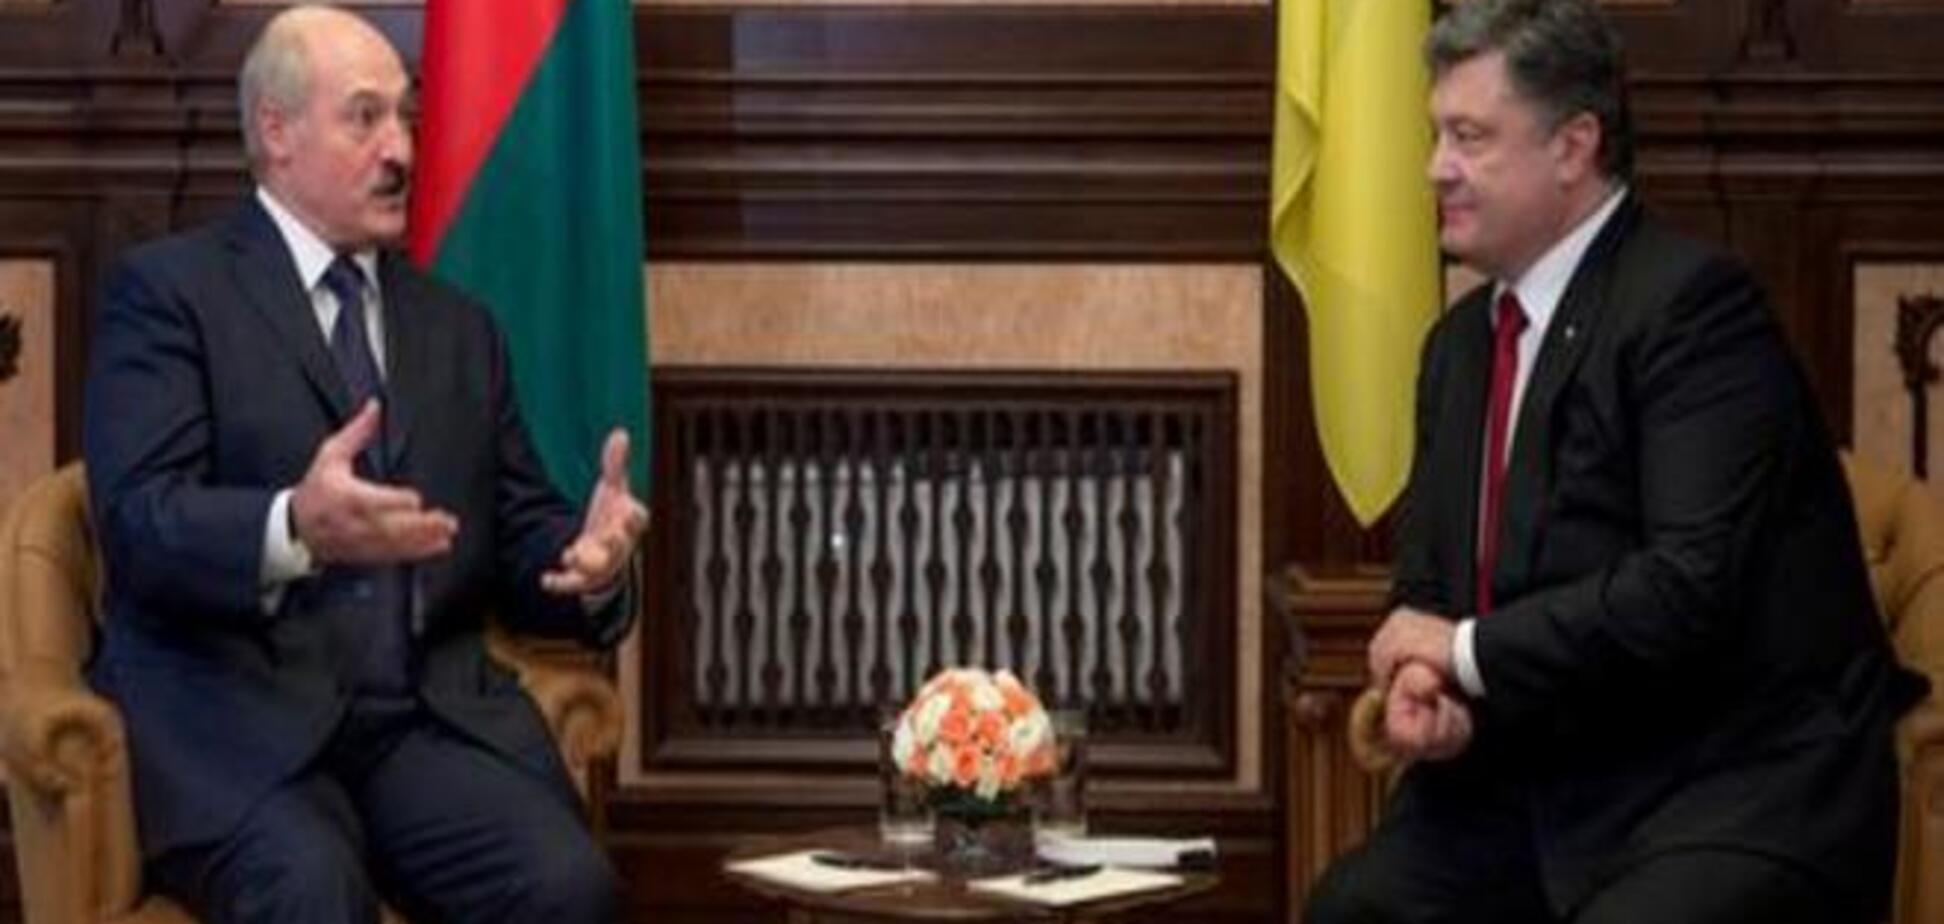 Лукашенко и Назарбаев в Киеве - пощечина российской дипломатии?